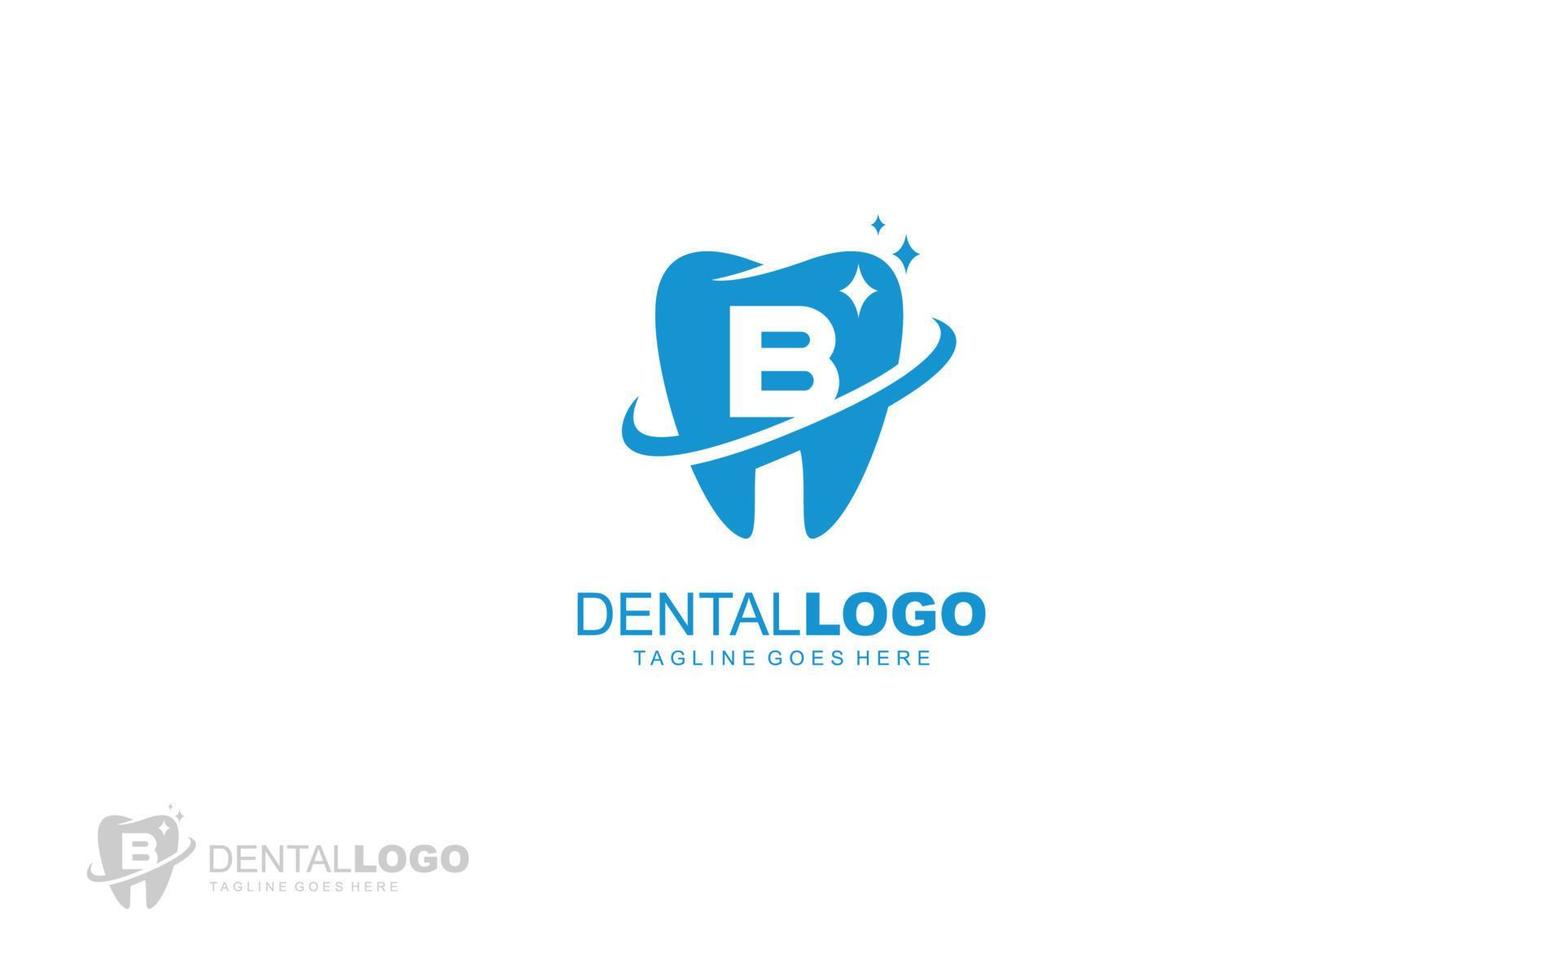 B logo dentist for branding company. letter template vector illustration for your brand.